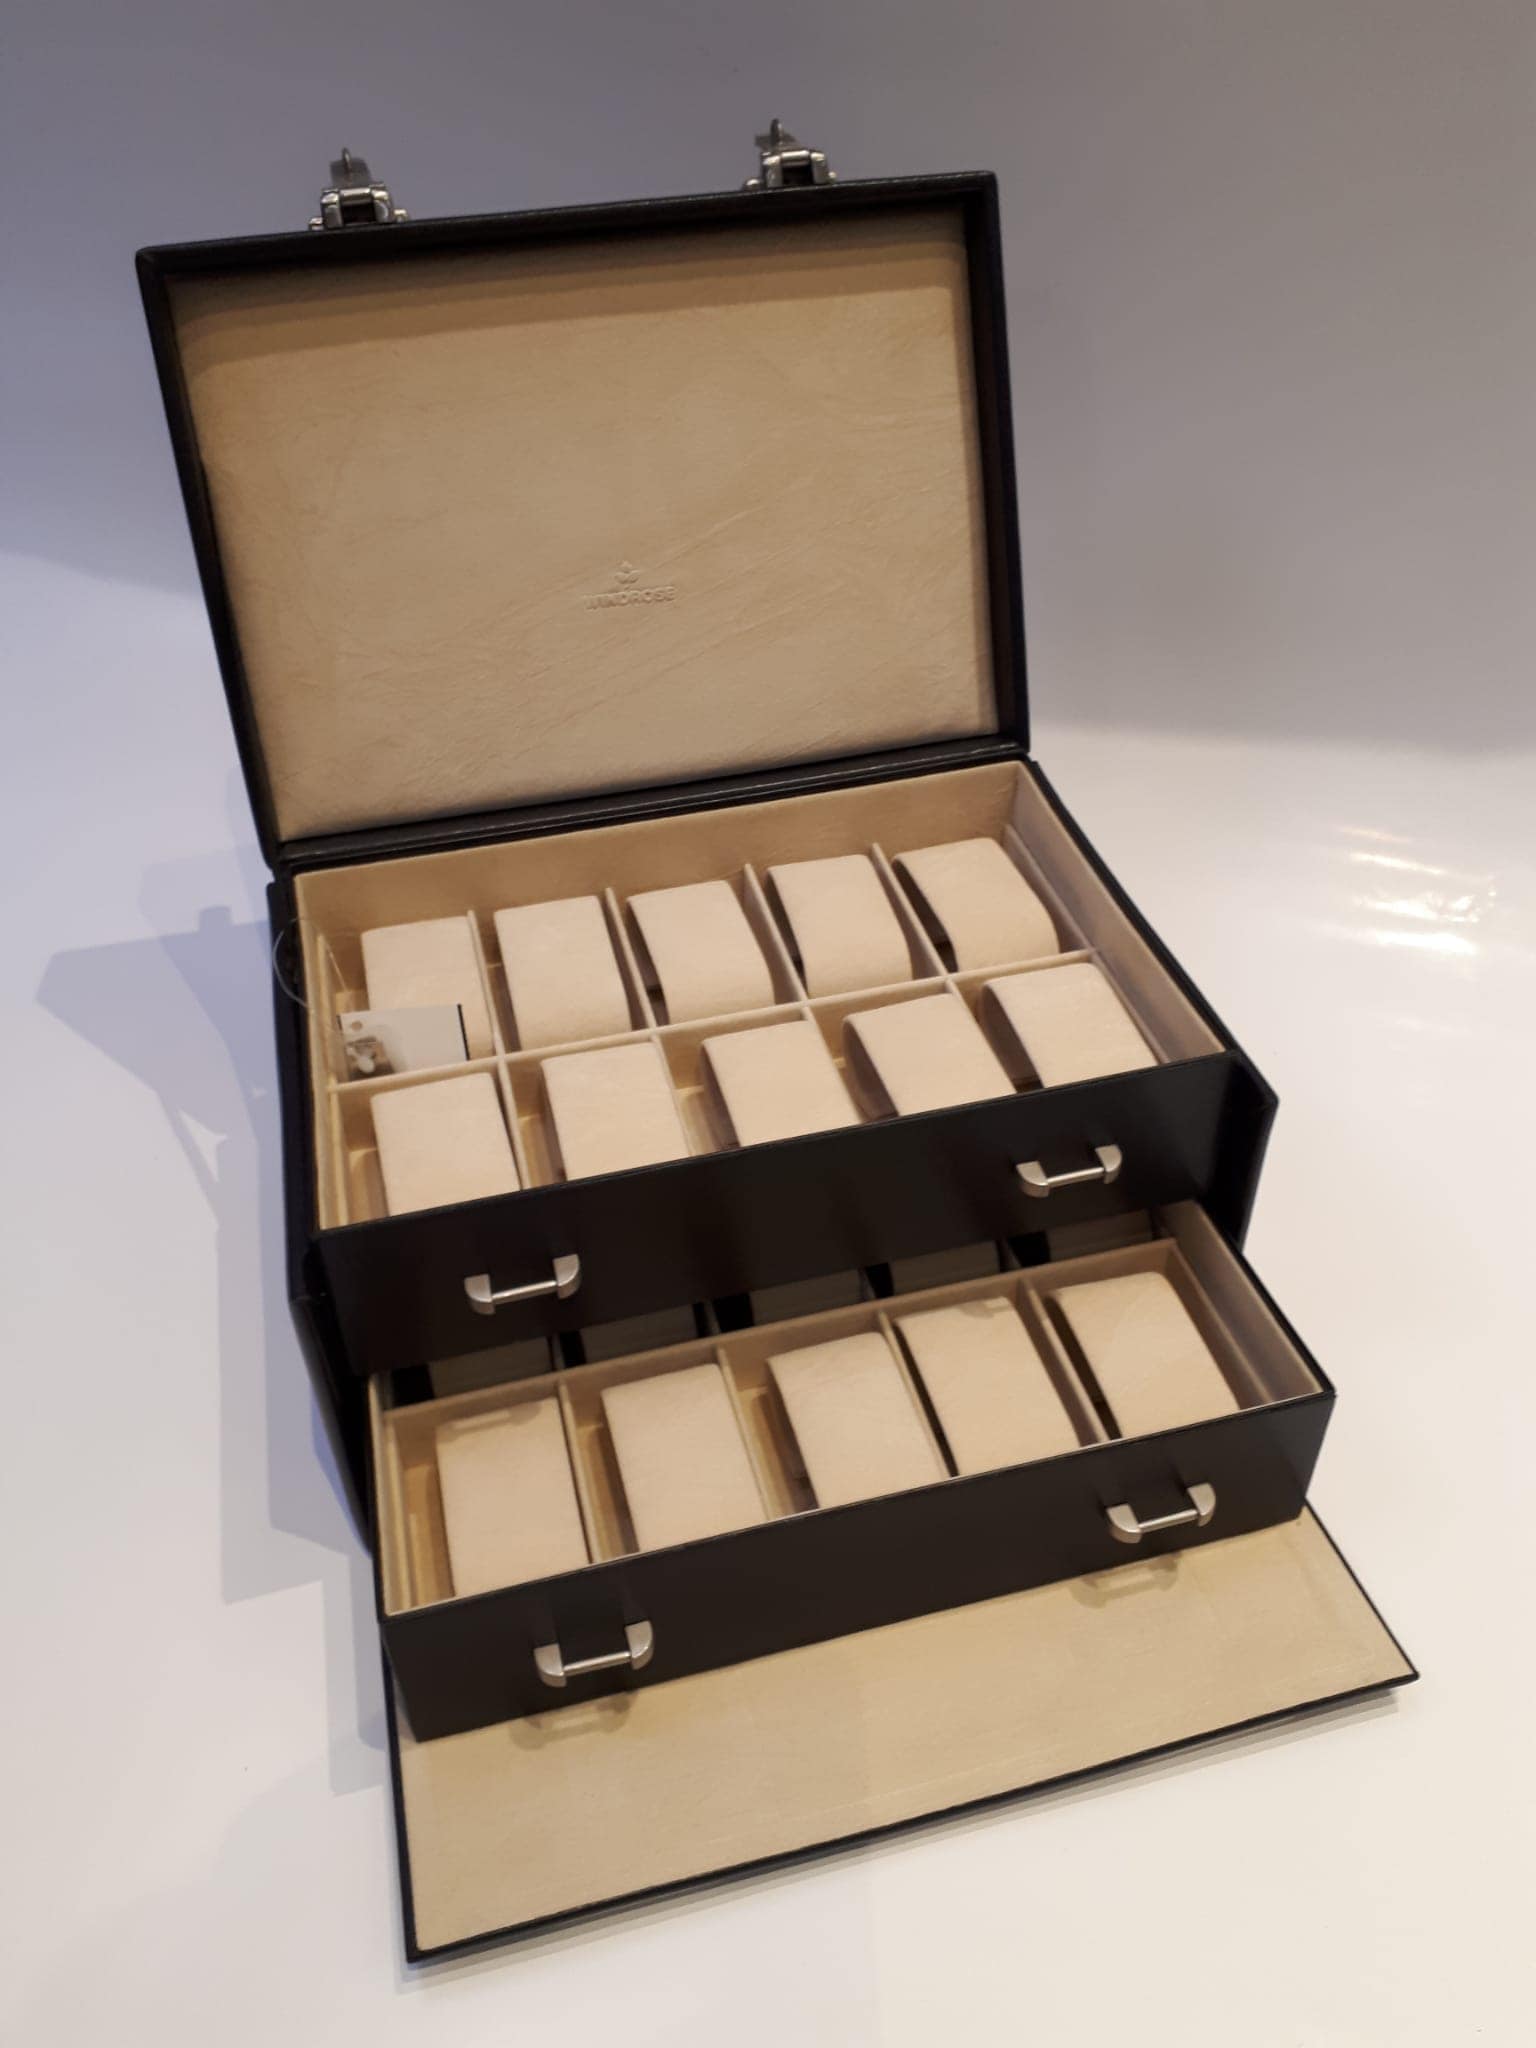 Uhrenkassette mit zwei Schubladen von Jederwaren Pflüger aus Leder in Hellbraun und Dunkelbraun